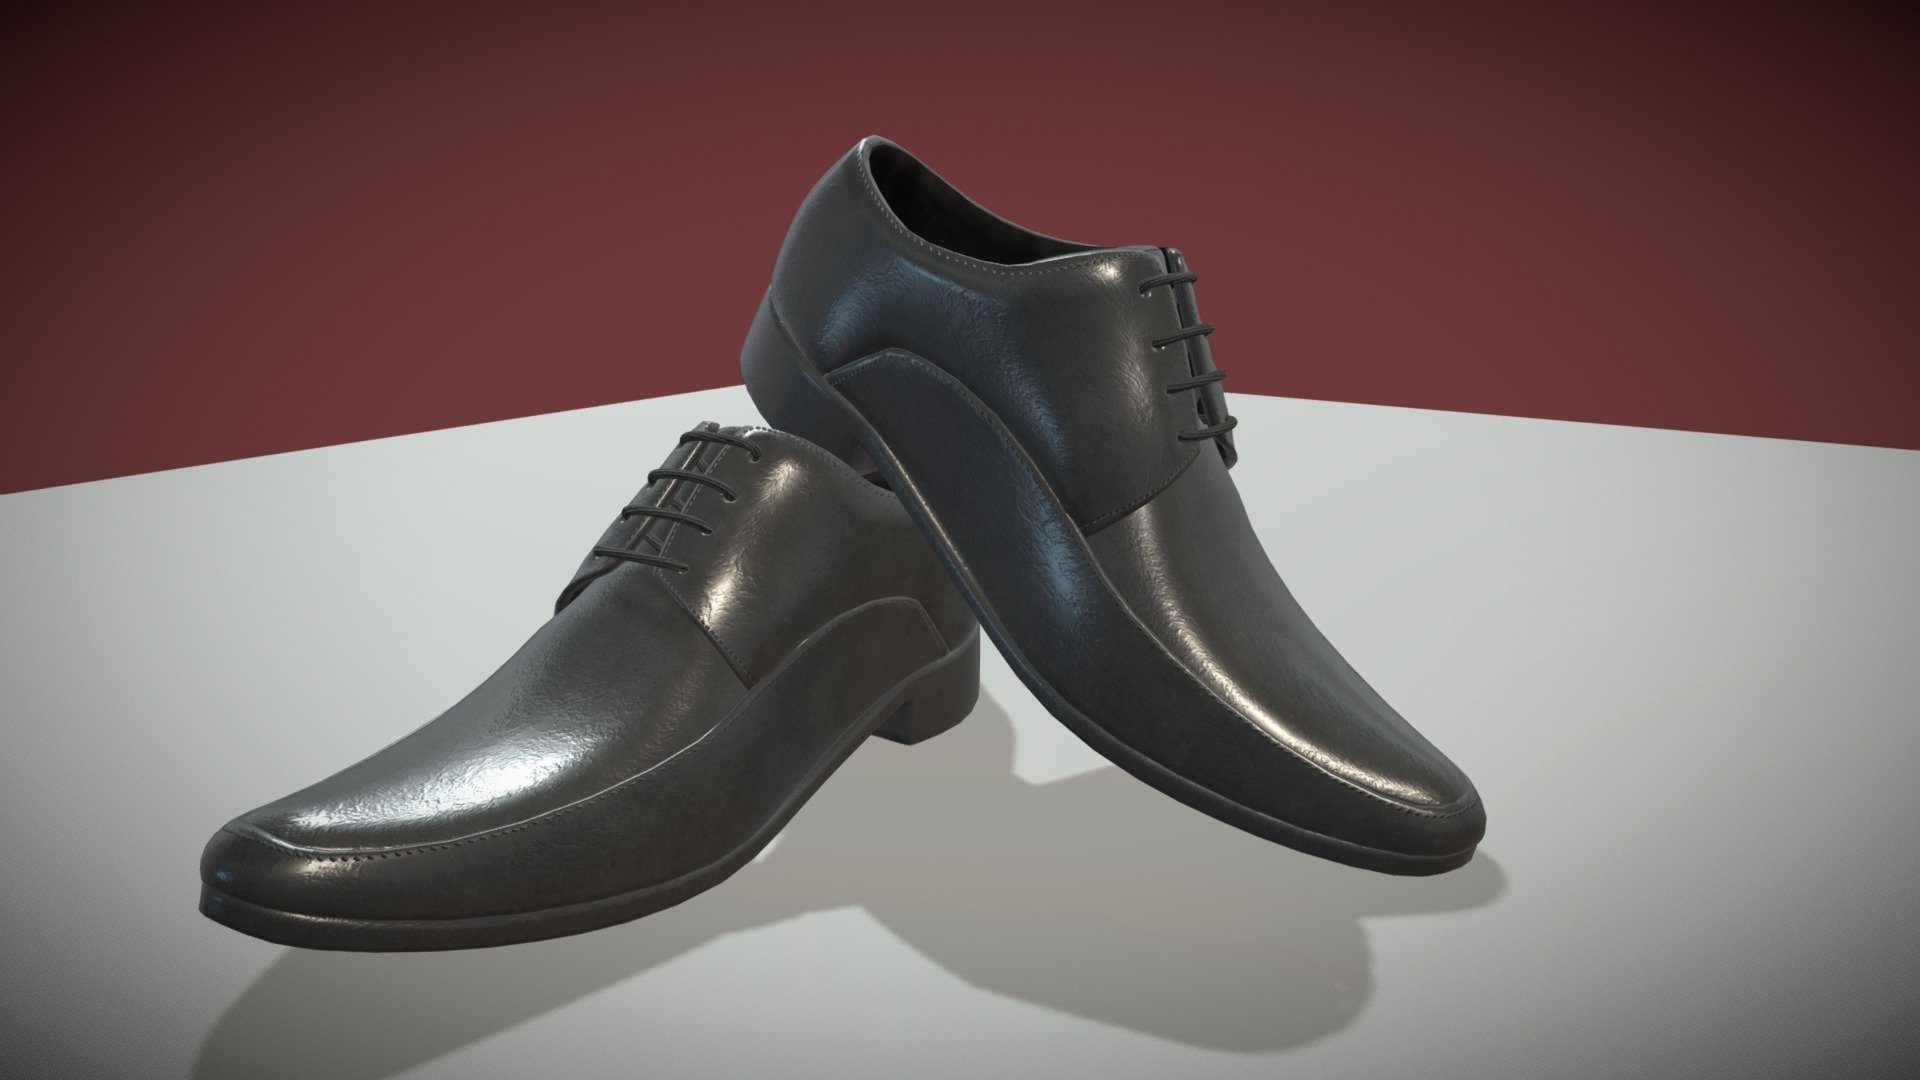 3d Shoes Model Free Download | estudioespositoymiguel.com.ar